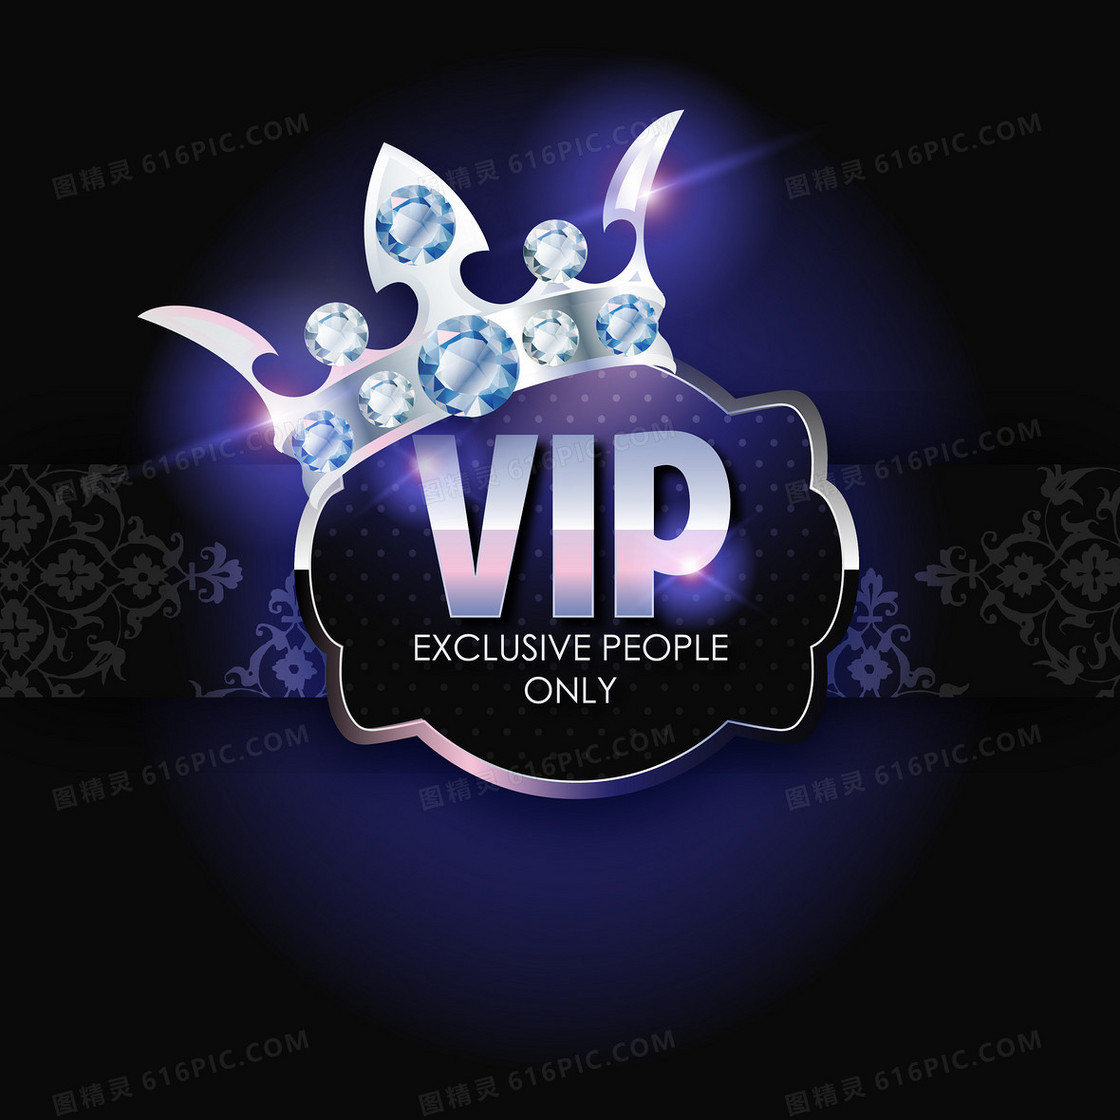 梦幻VIP几何水晶皇冠背景素材